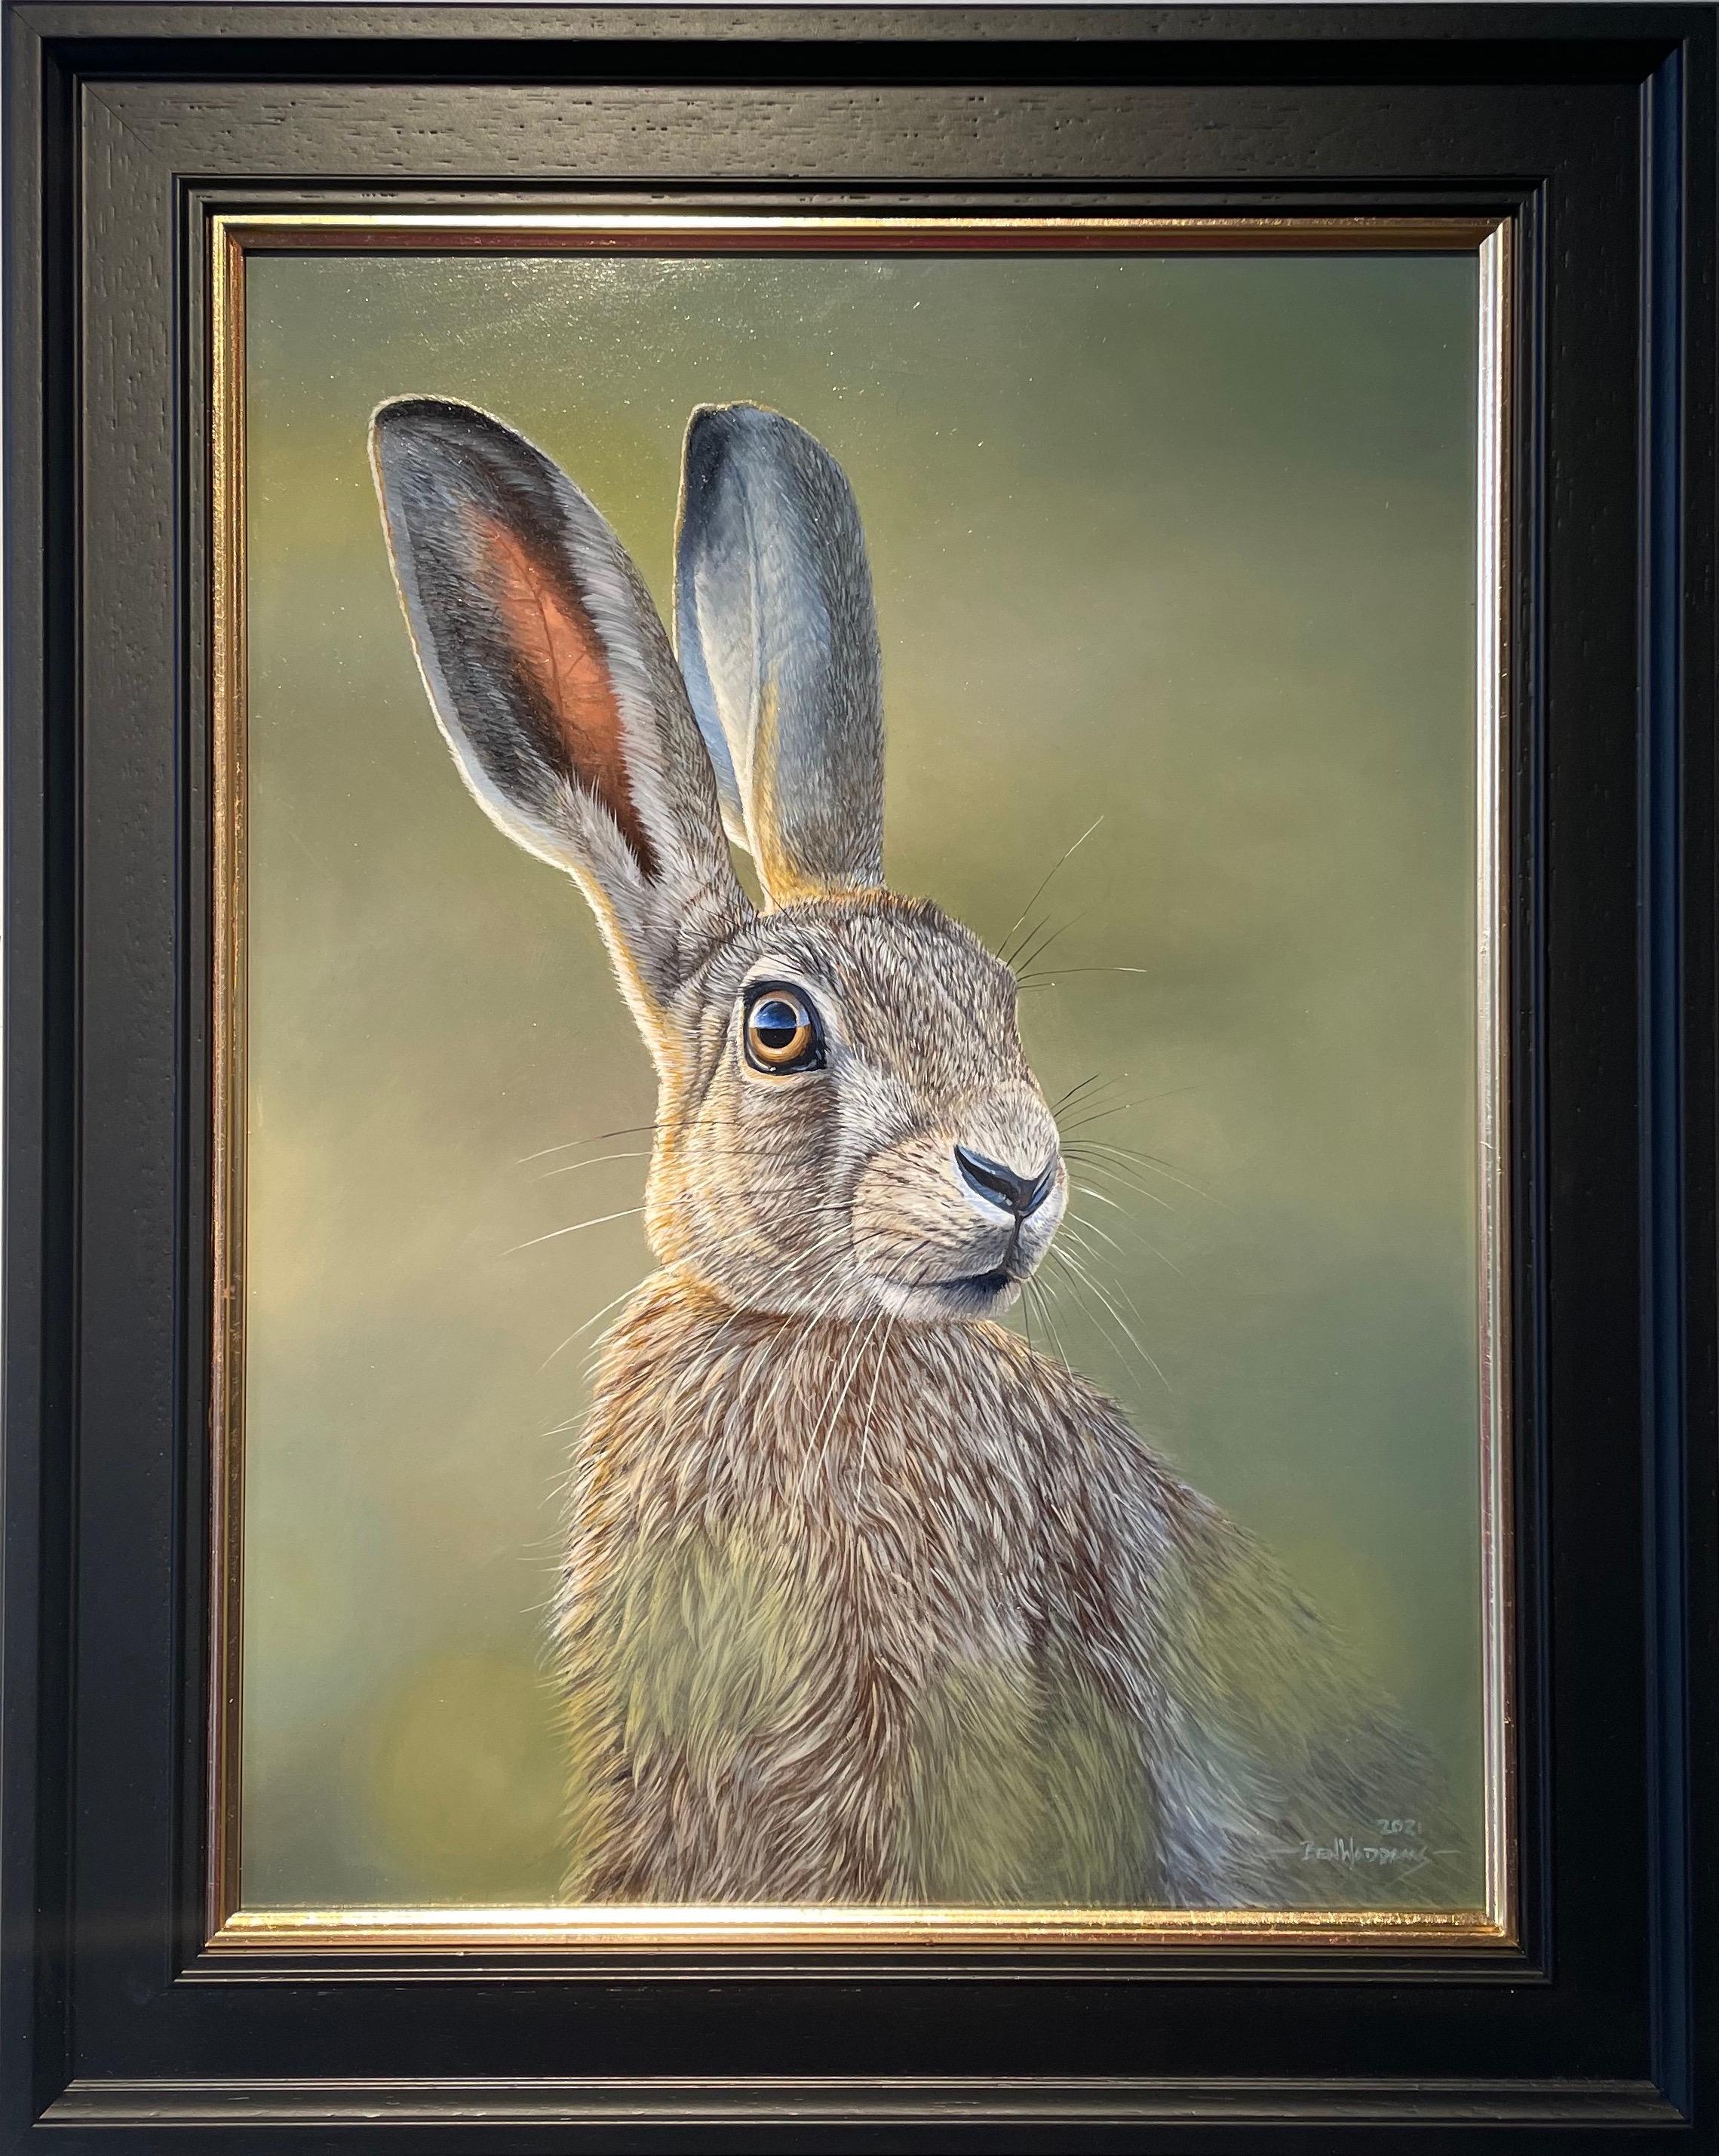 Ben Waddams Animal Painting – Alert Hare" Zeitgenössisches fotorealistisches Gemälde eines Hasen in freier Wildbahn, grün